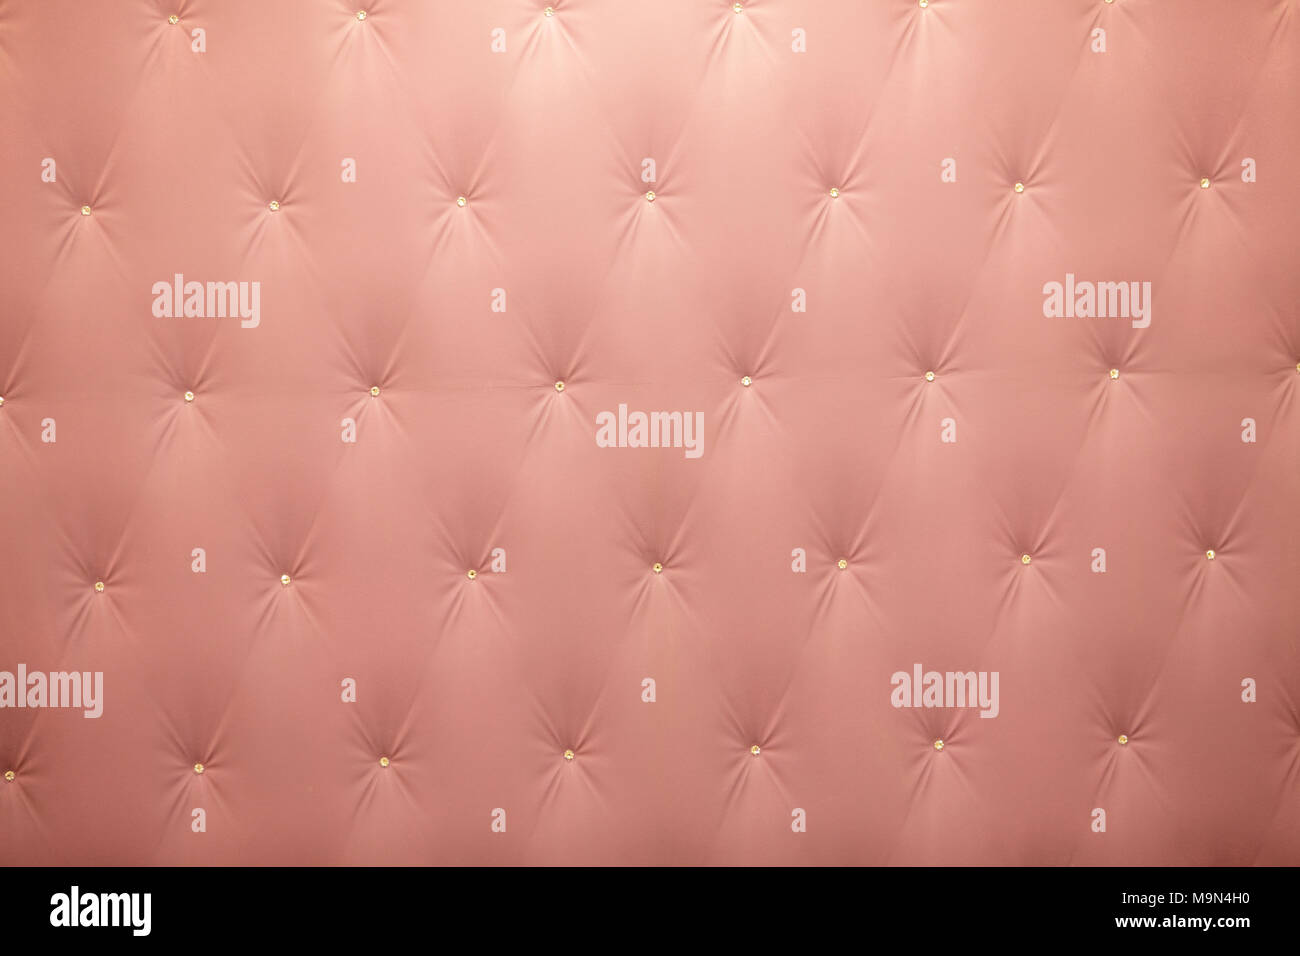 Muro convesso immagini e fotografie stock ad alta risoluzione - Alamy